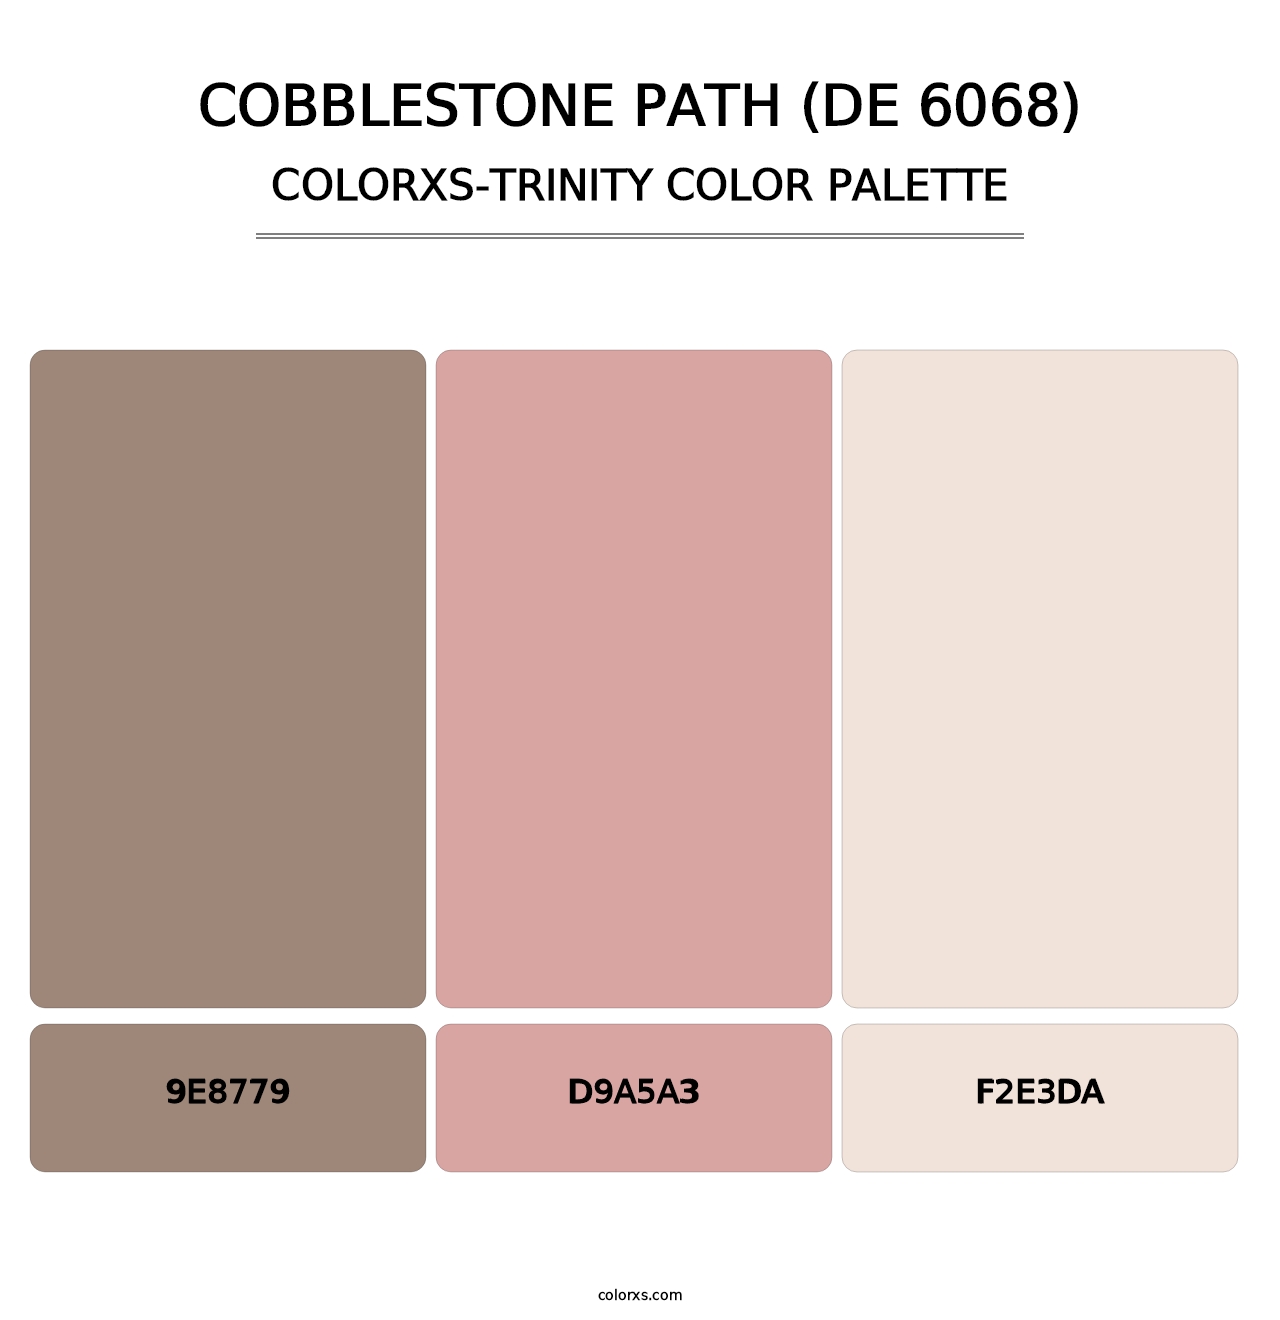 Cobblestone Path (DE 6068) - Colorxs Trinity Palette